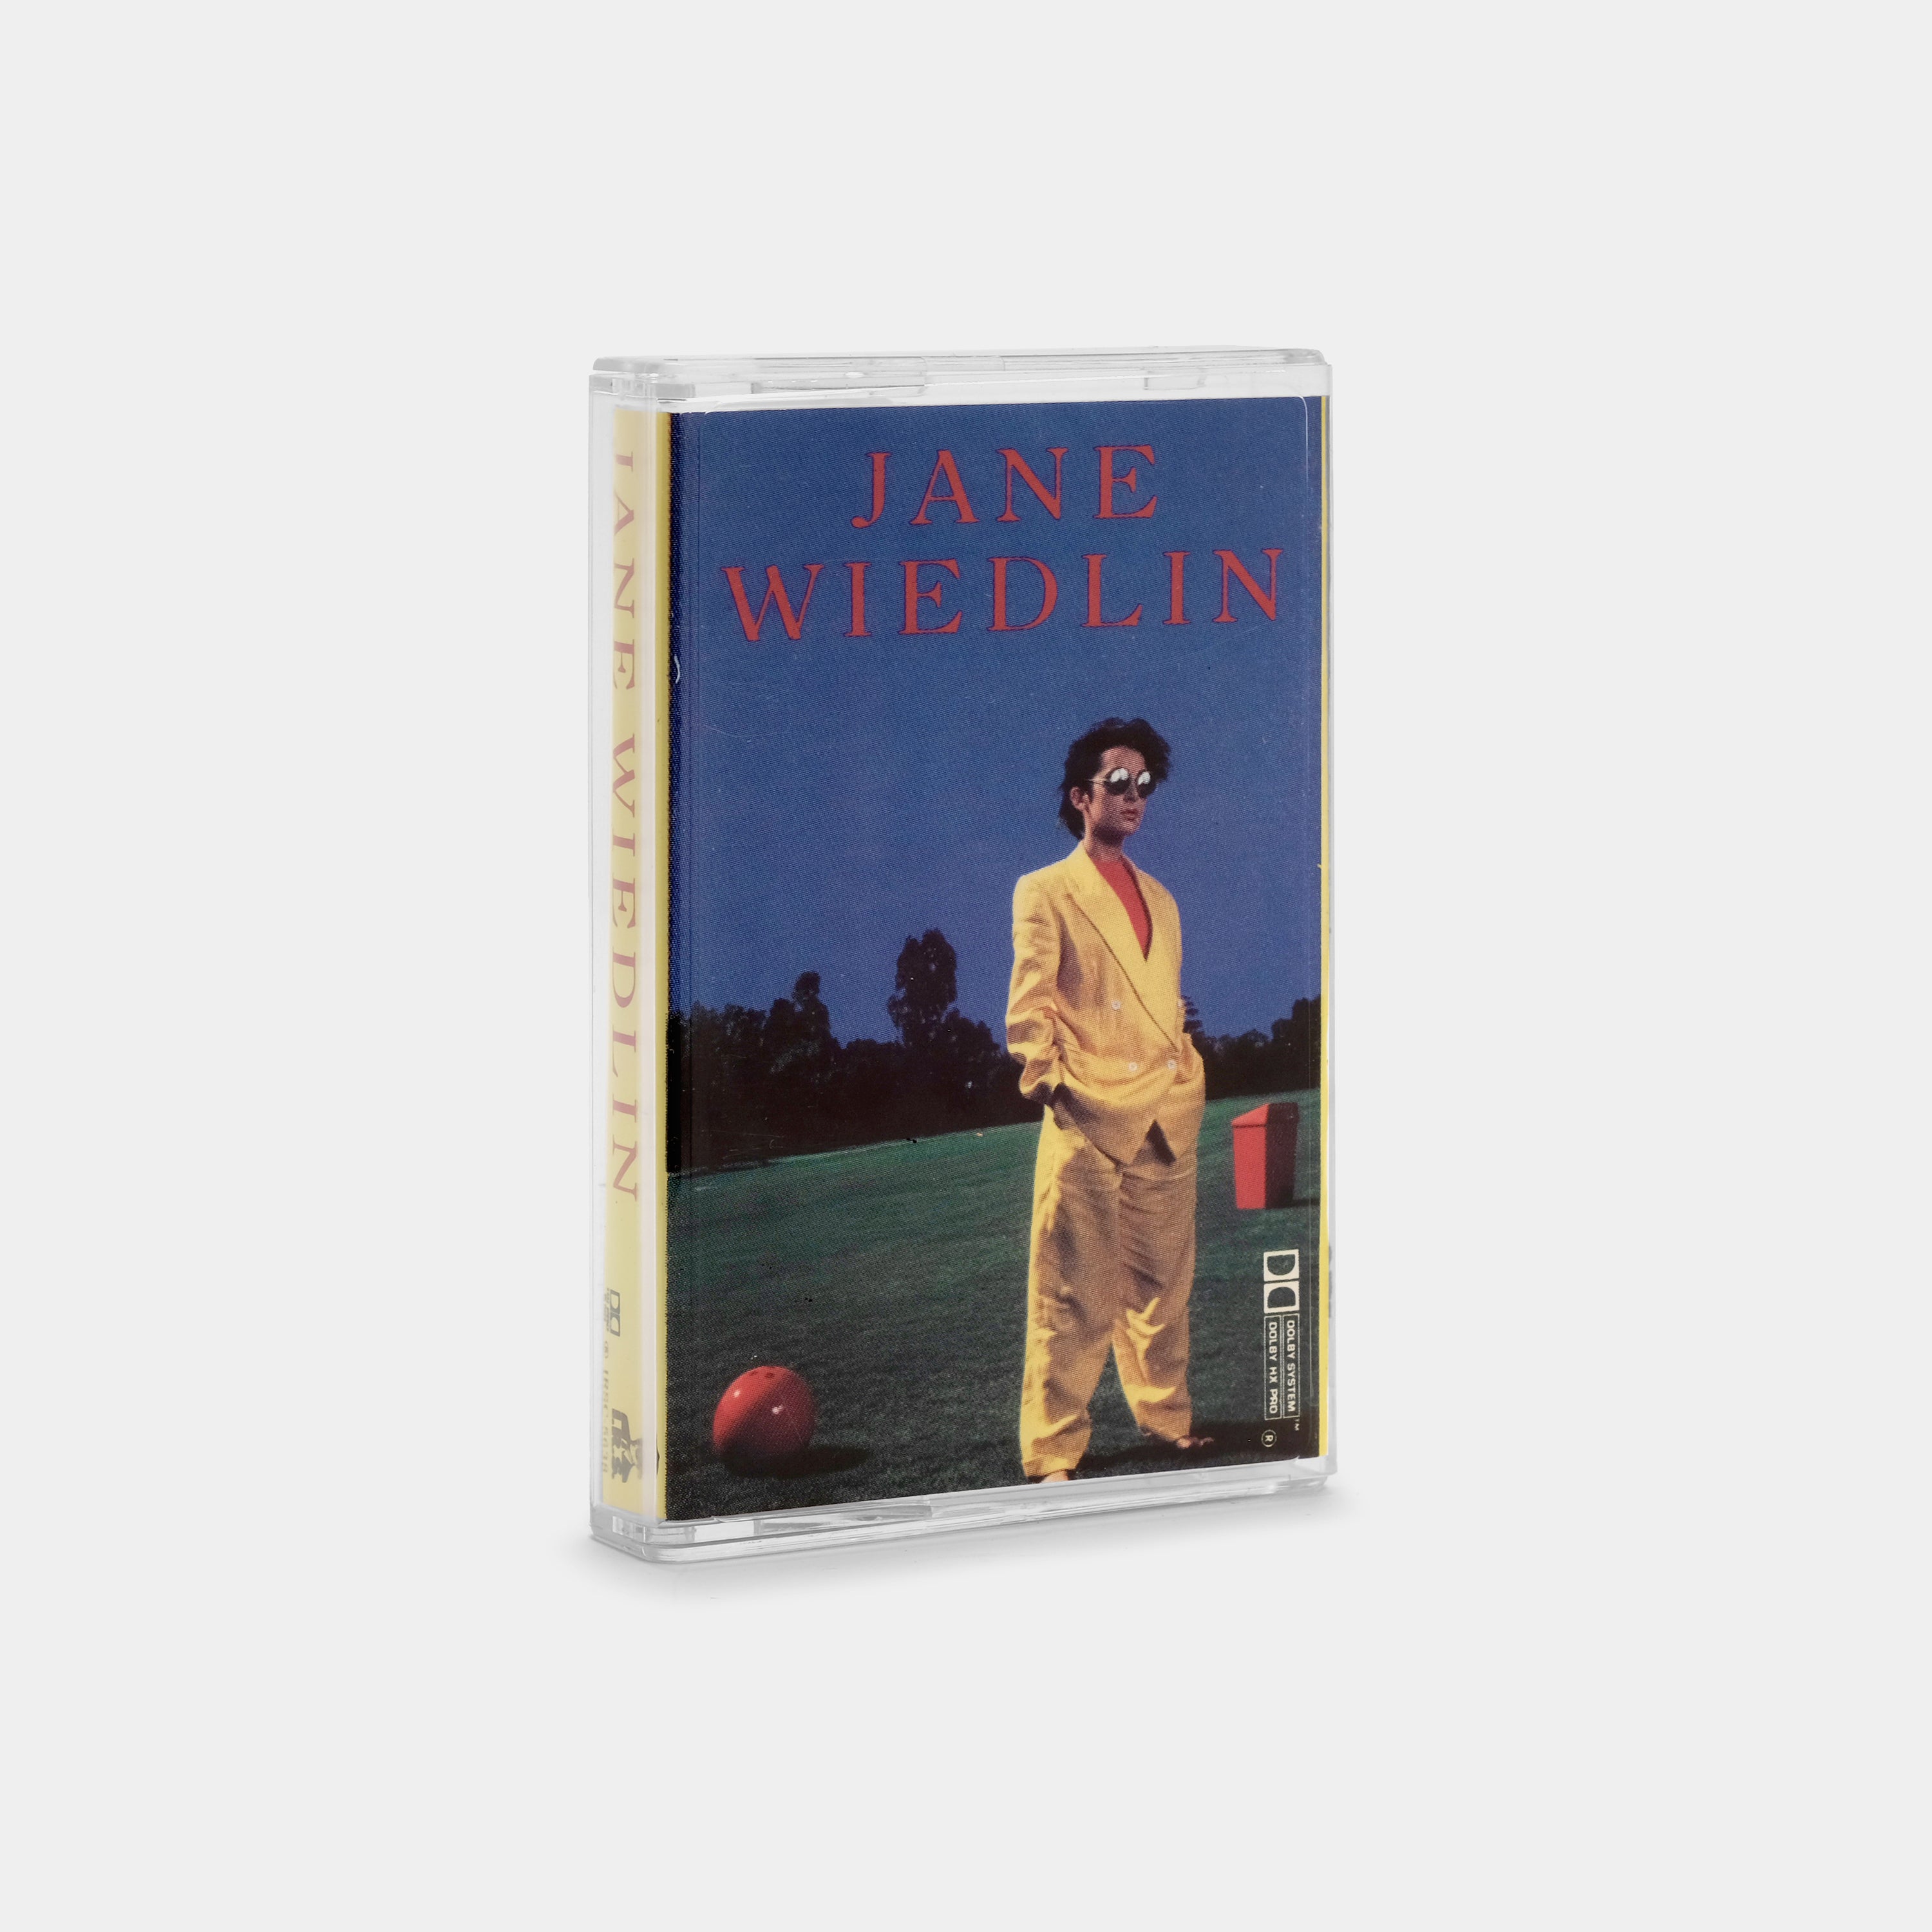 Jane Wiedlin - Jane Wiedlin Cassette Tape